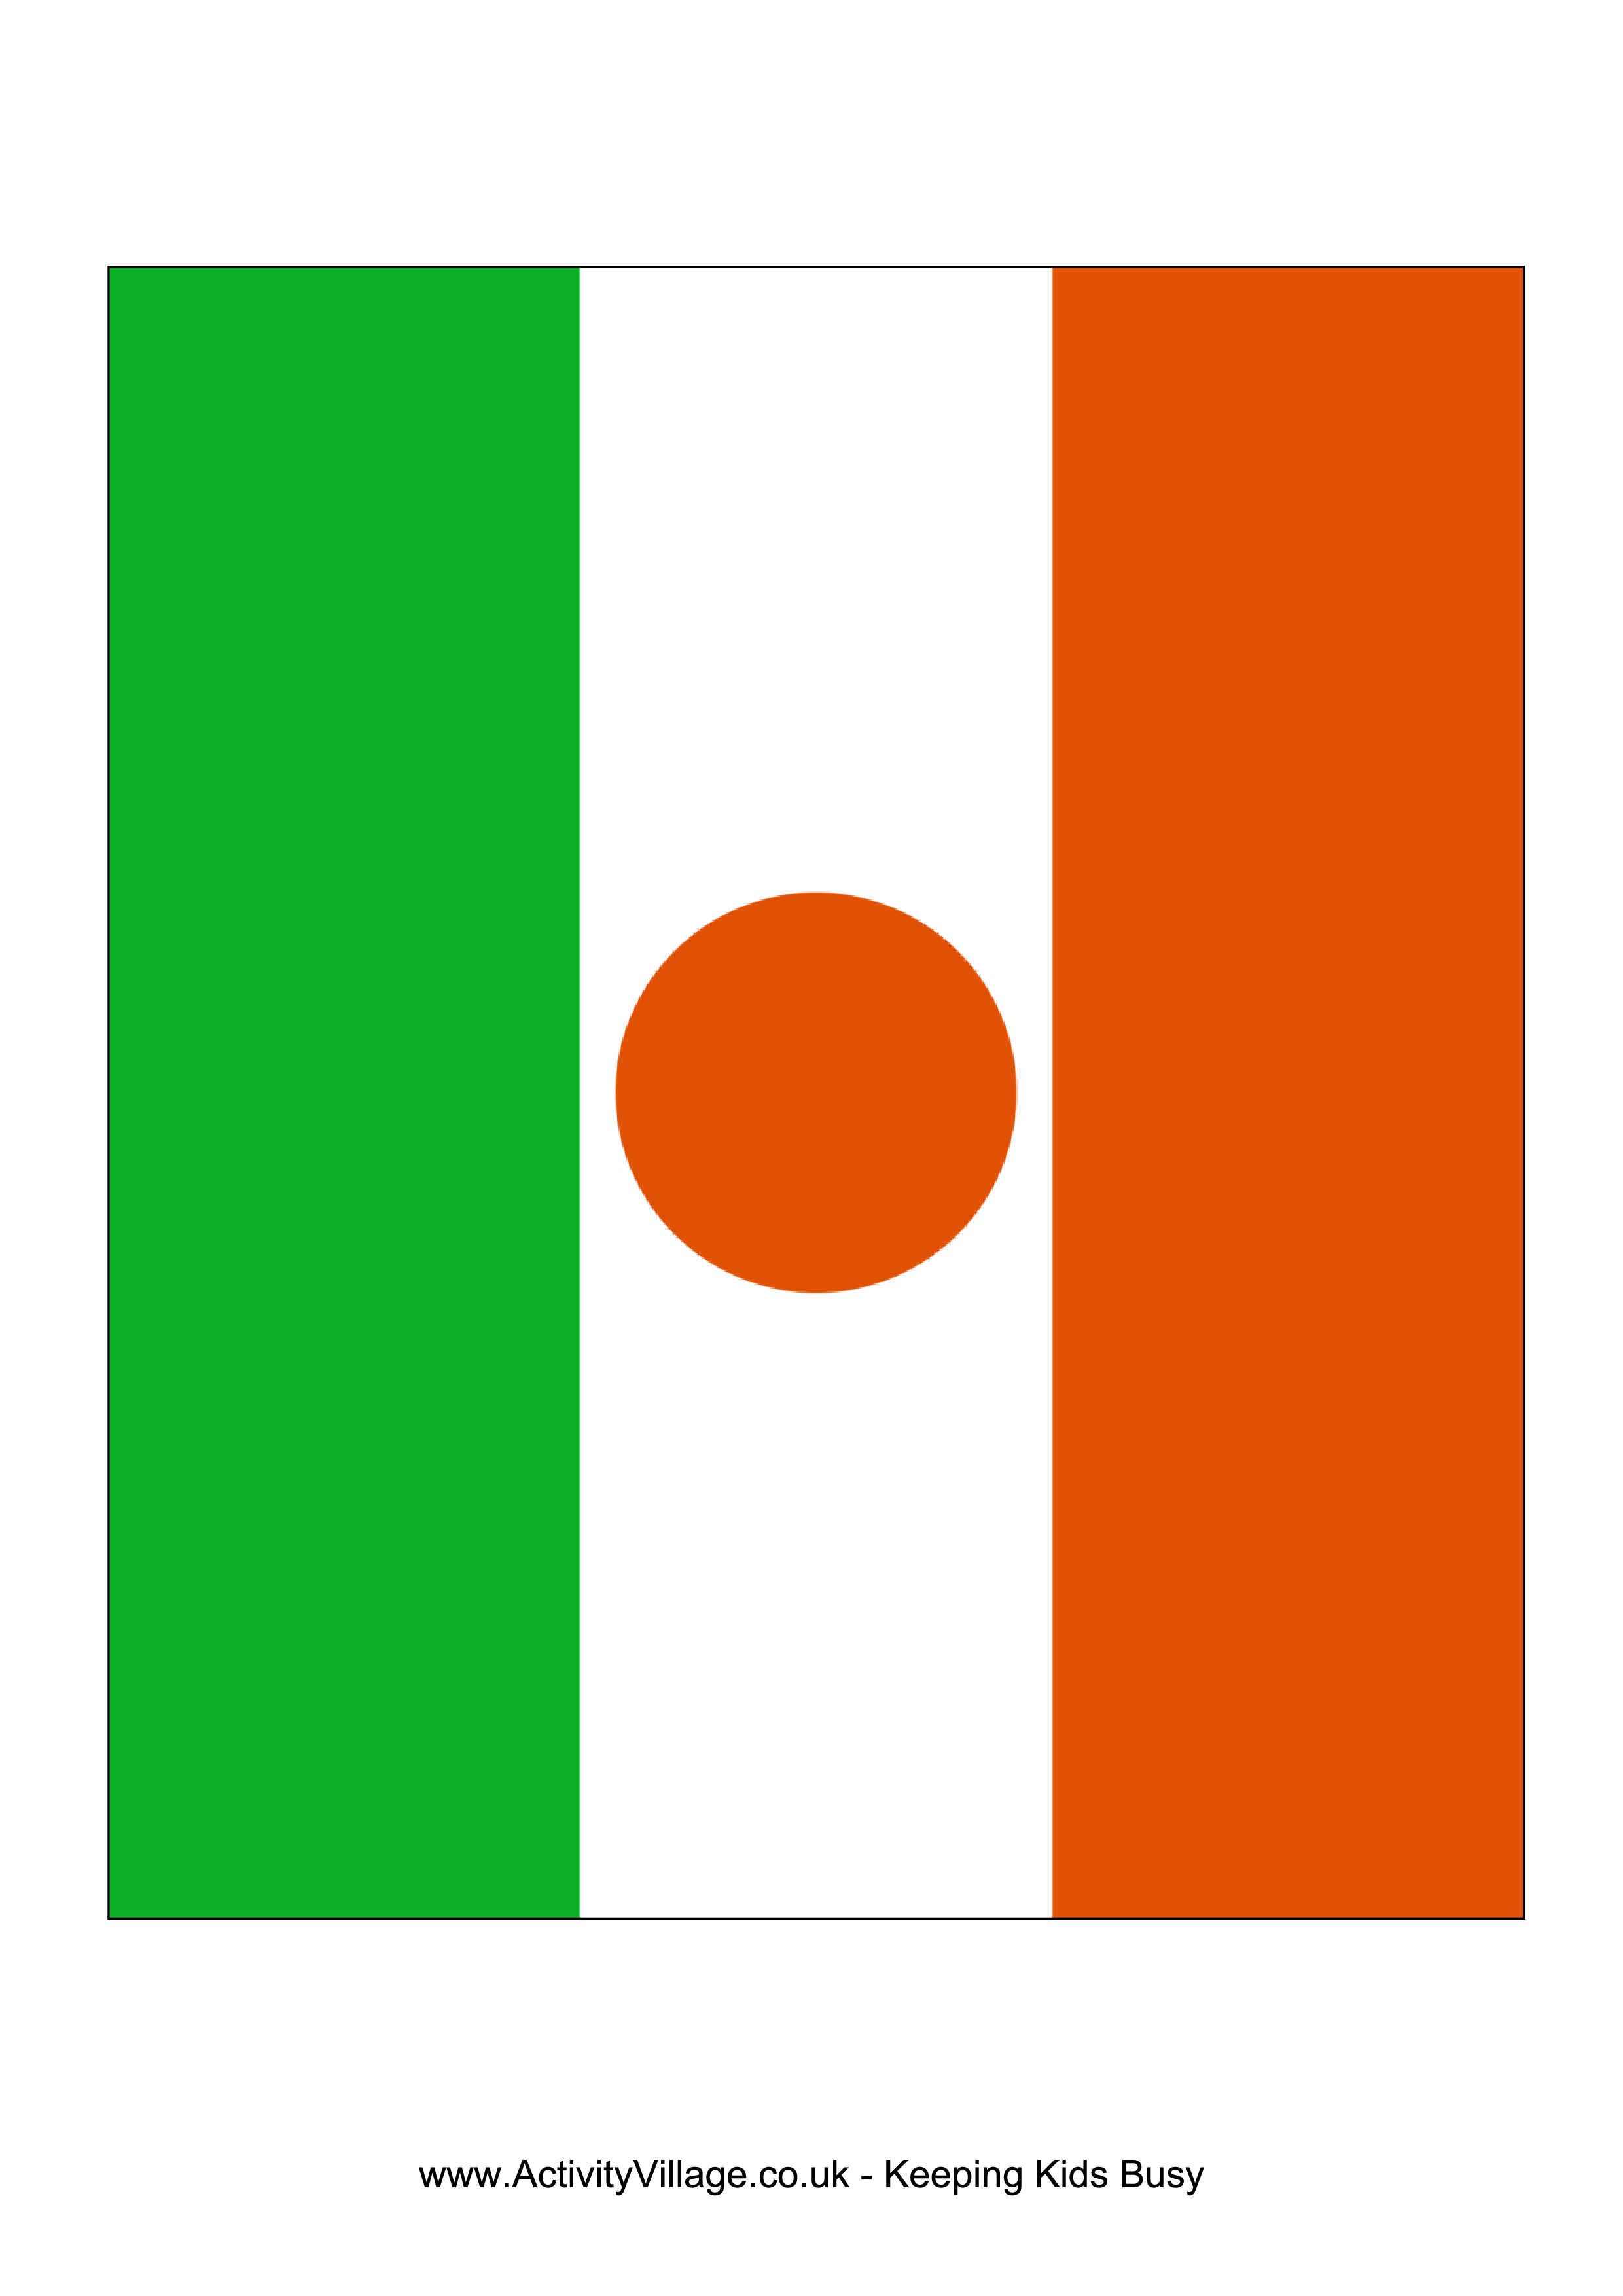 niger flag plantilla imagen principal